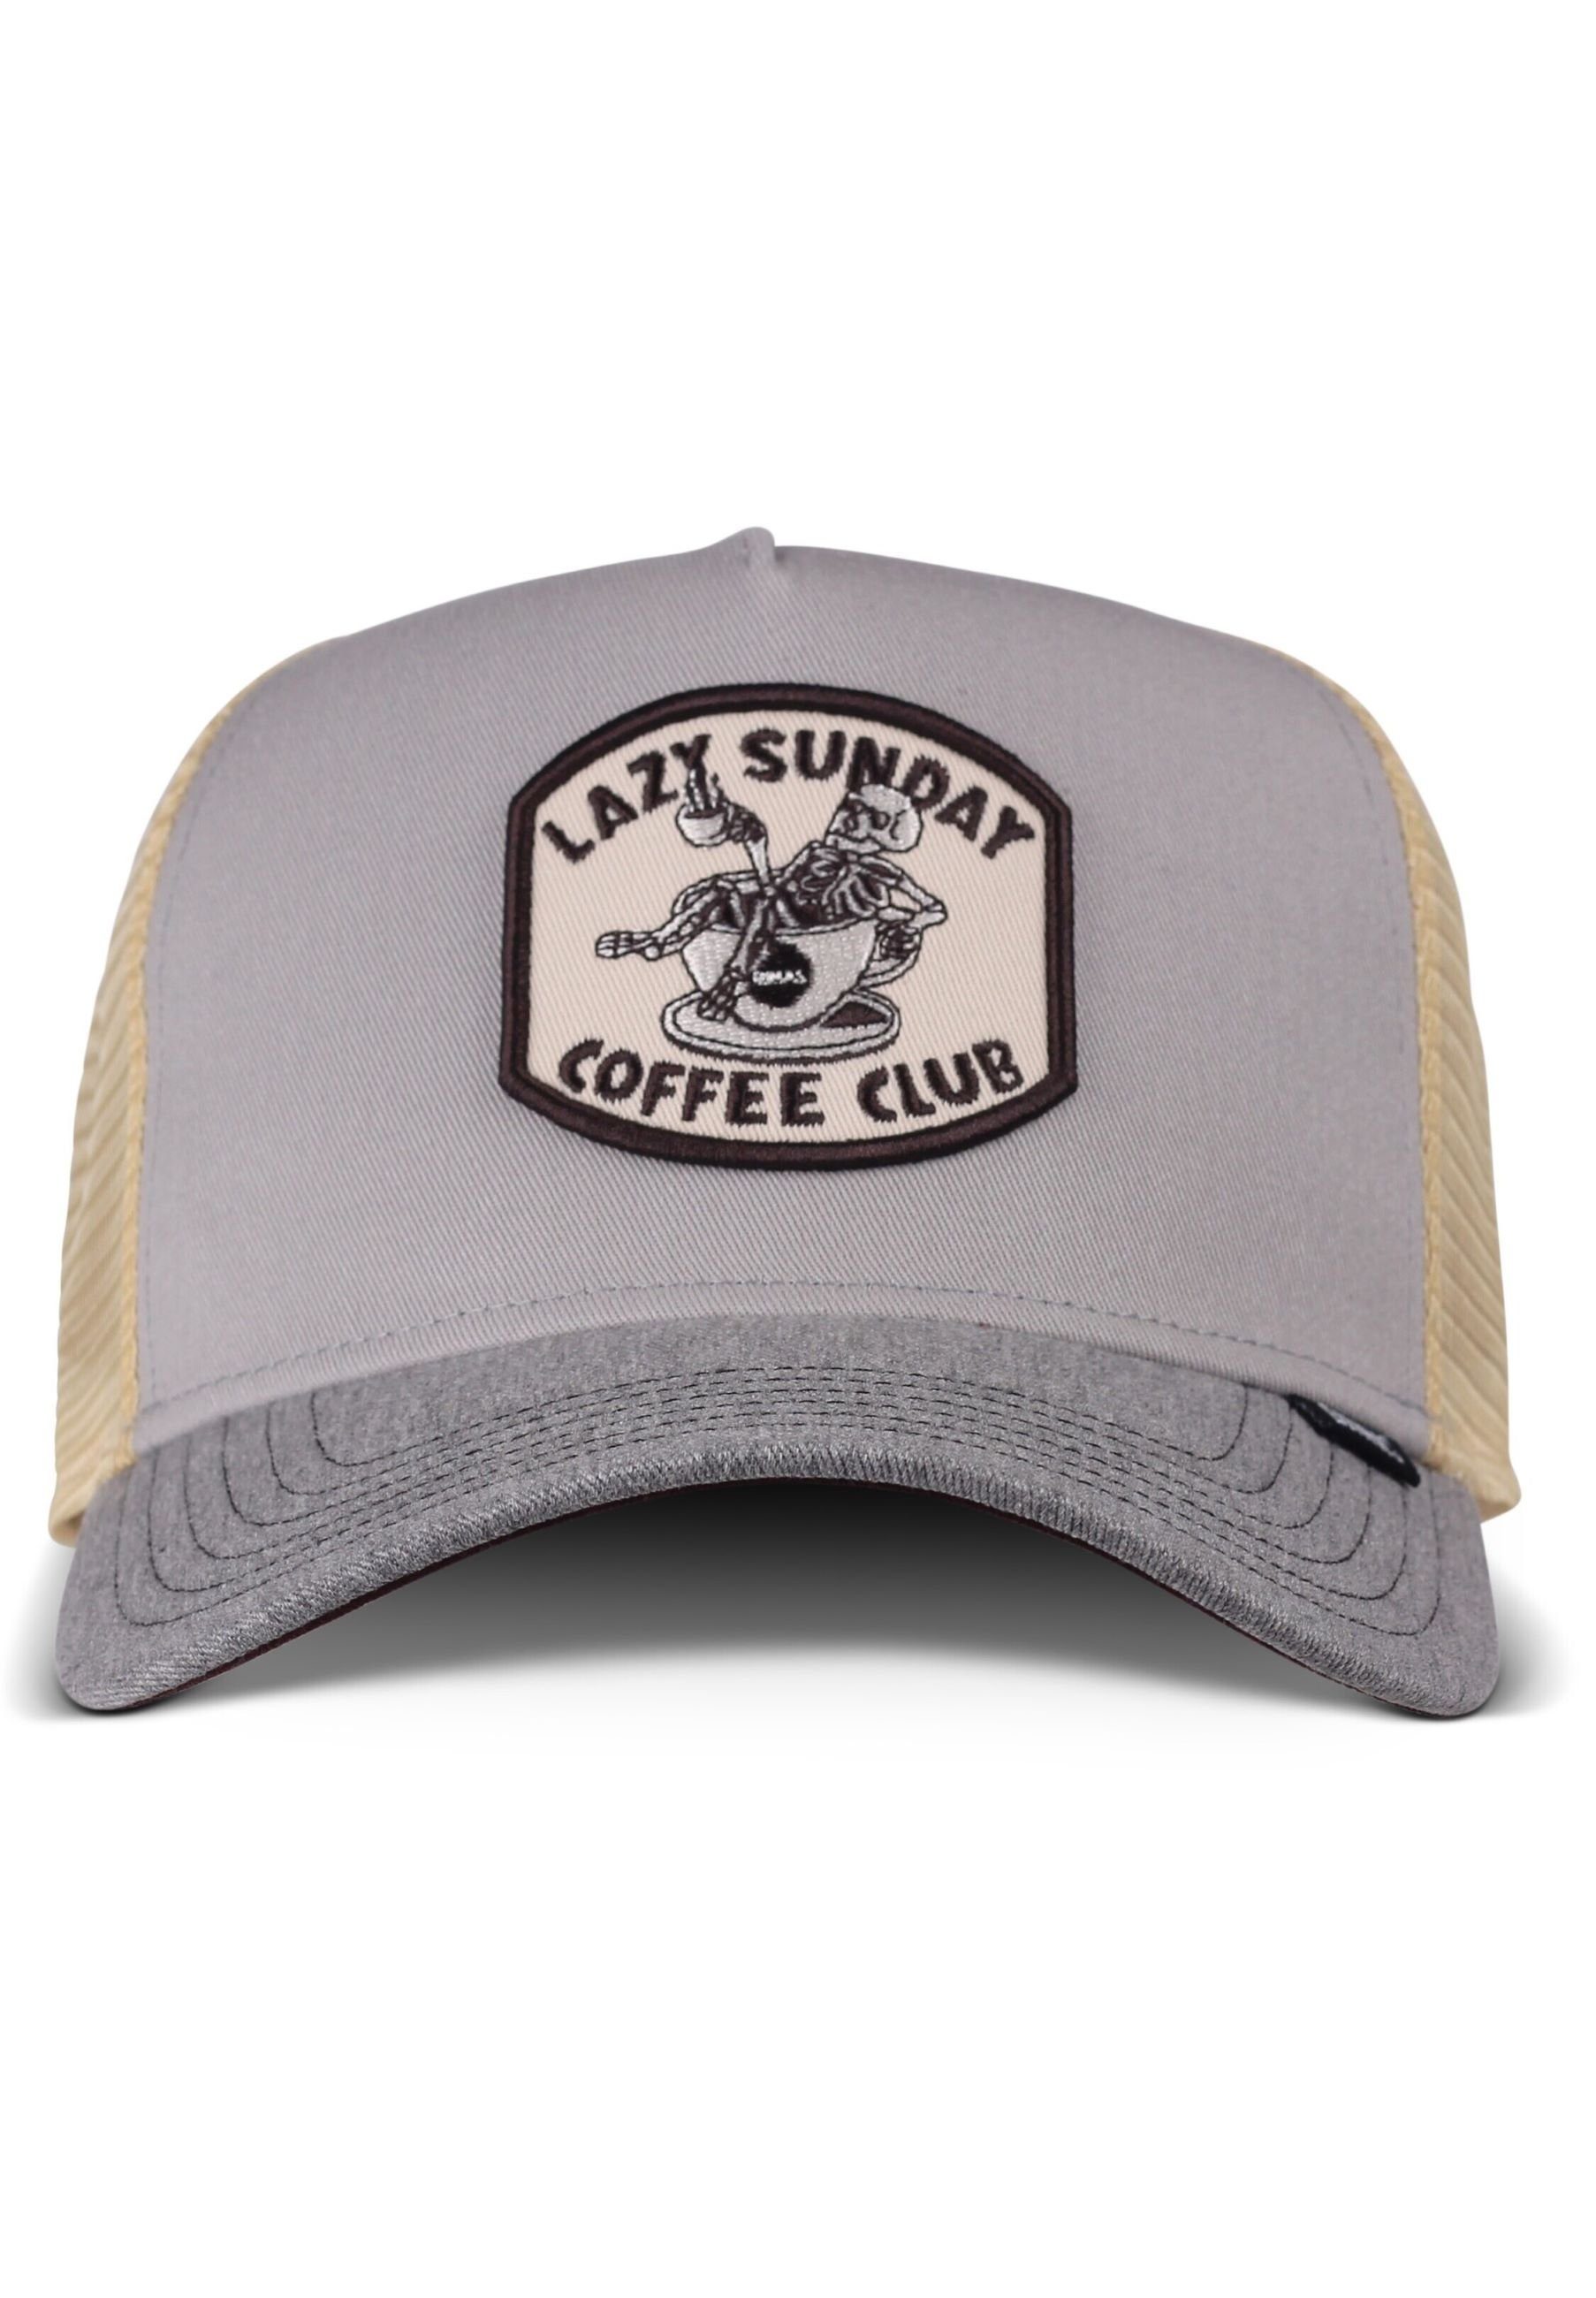 Club Grey/ Heather Djinns Cap Trucker Coffee grau - Grey HFT